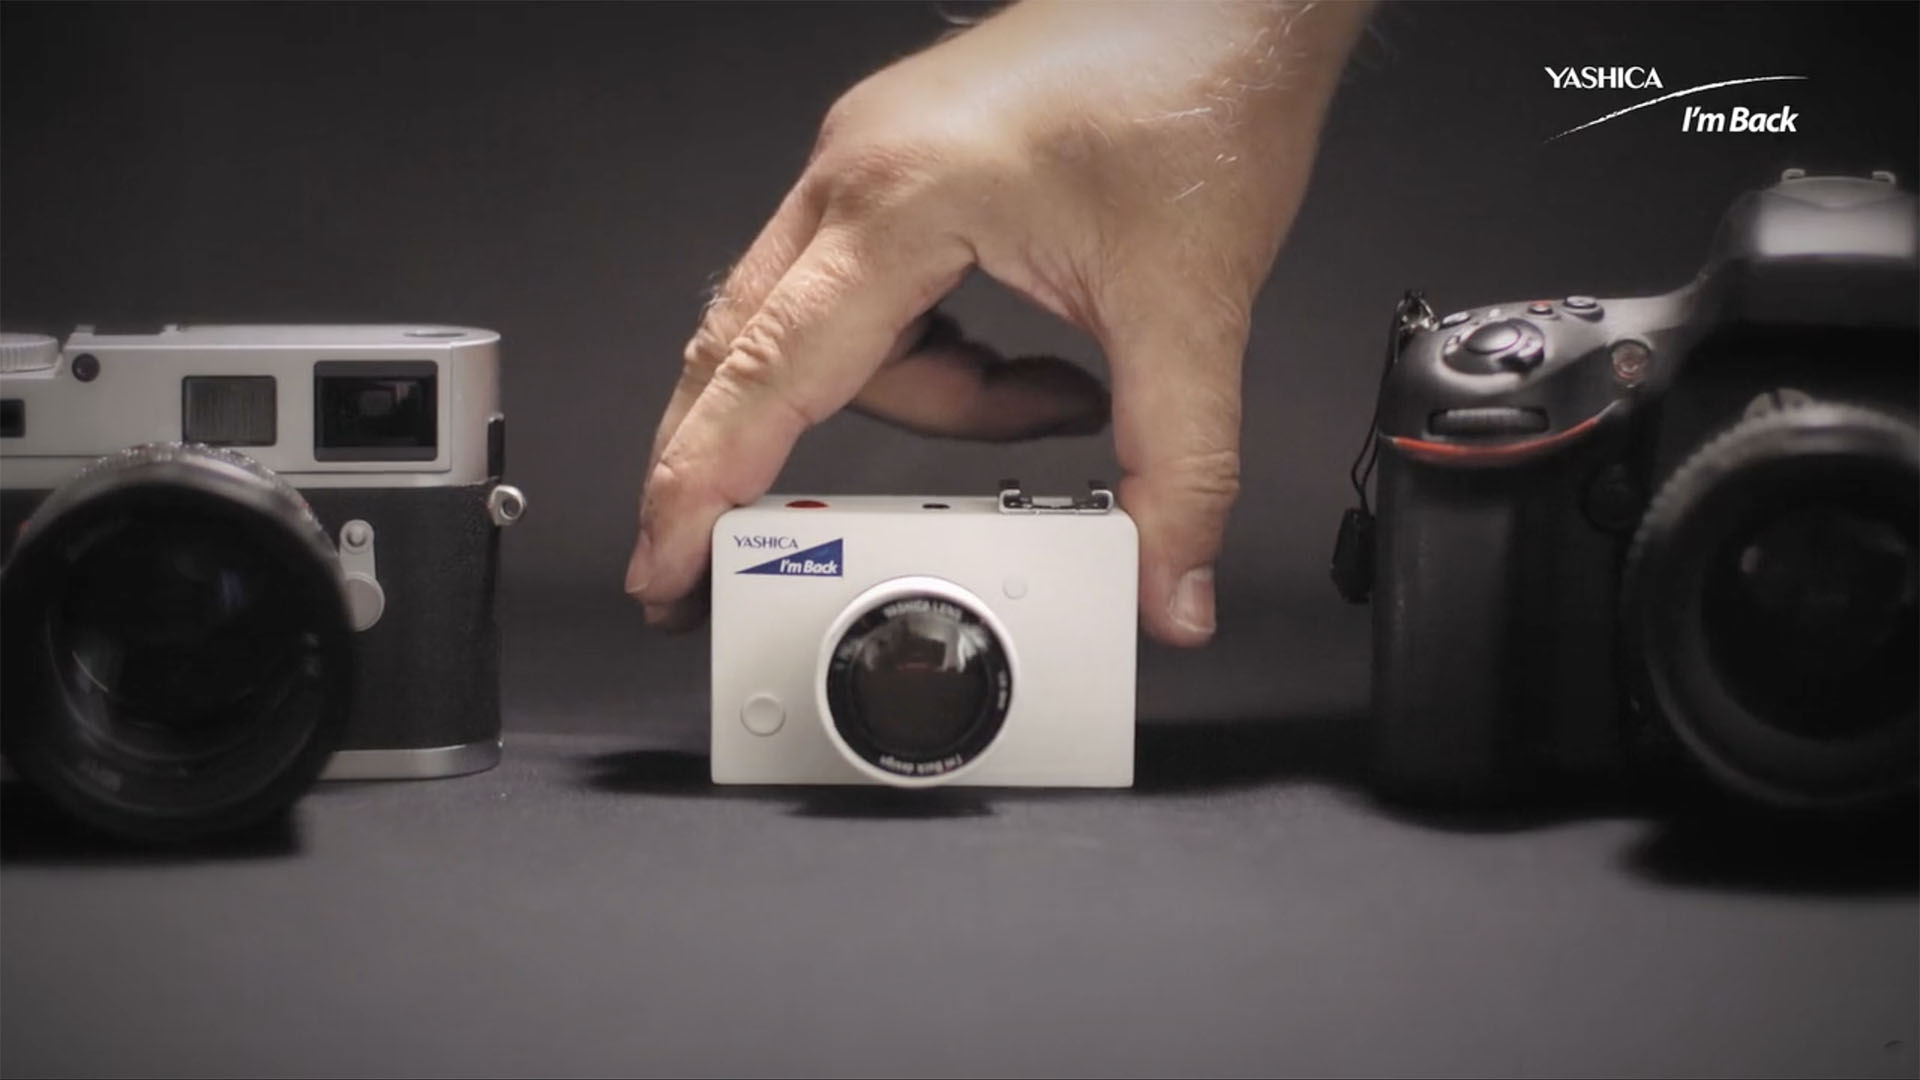 Kampania na Kickstarterze dotycząca aparatów bezlusterkowych rozpoczęta przez Yashica i I'm Back